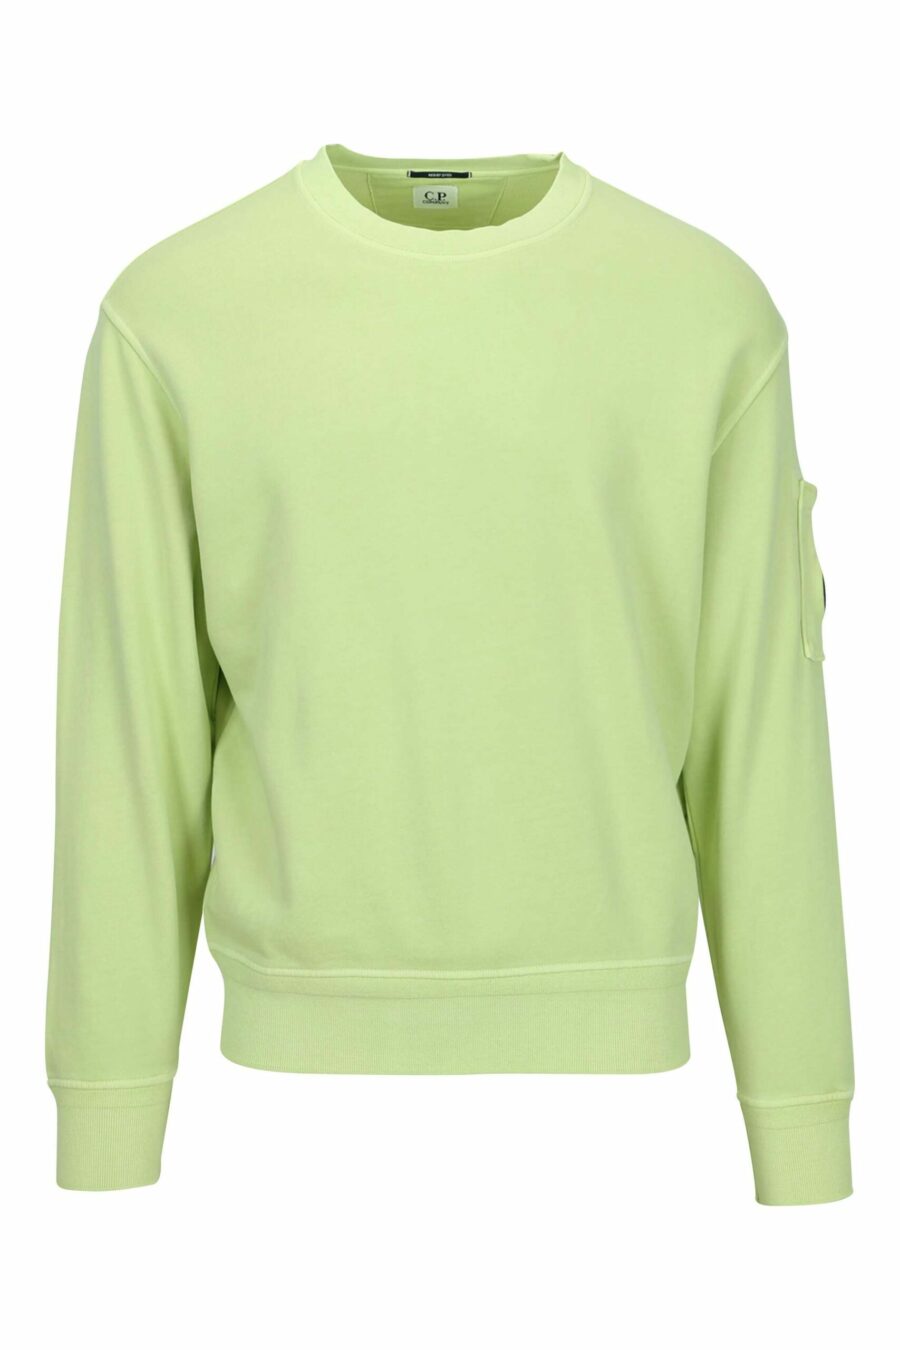 Sweatshirt vert clair avec poche et lentille mini-logo - 7620943751833 en échelle